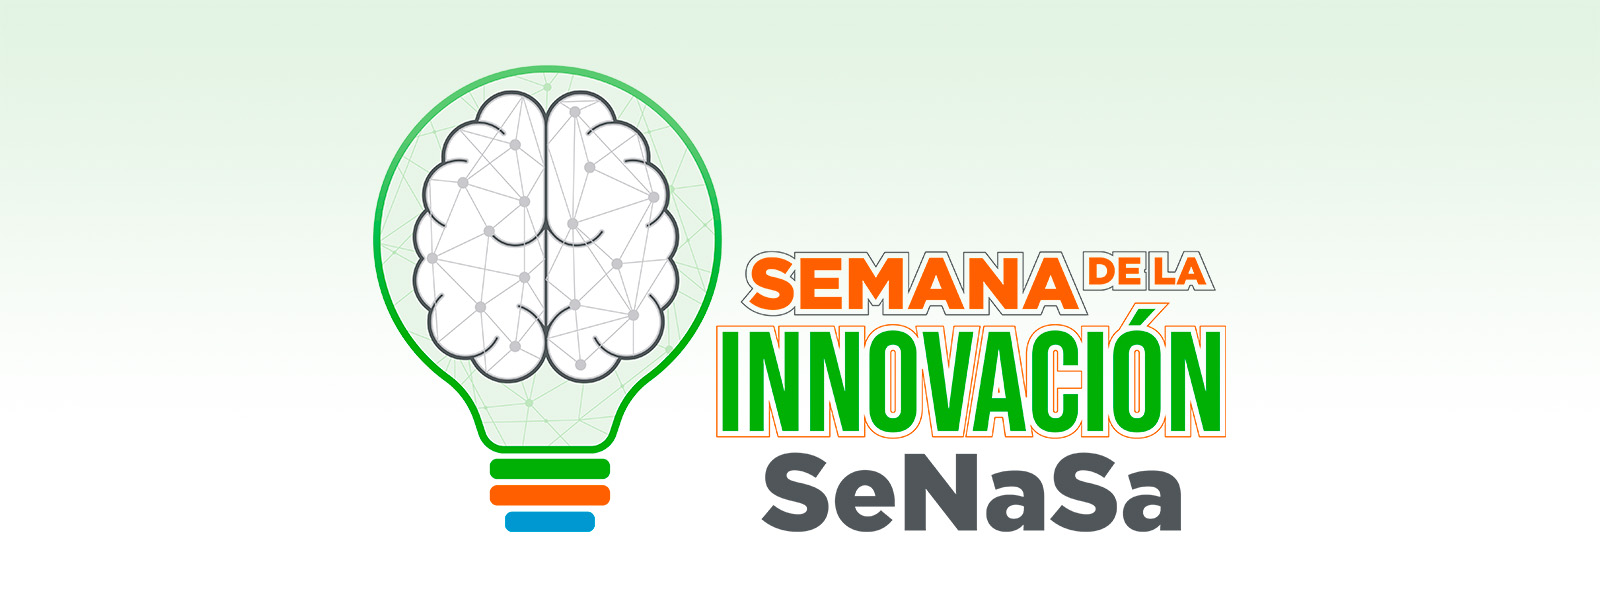 Titulo Semana de la Innovación Senasa